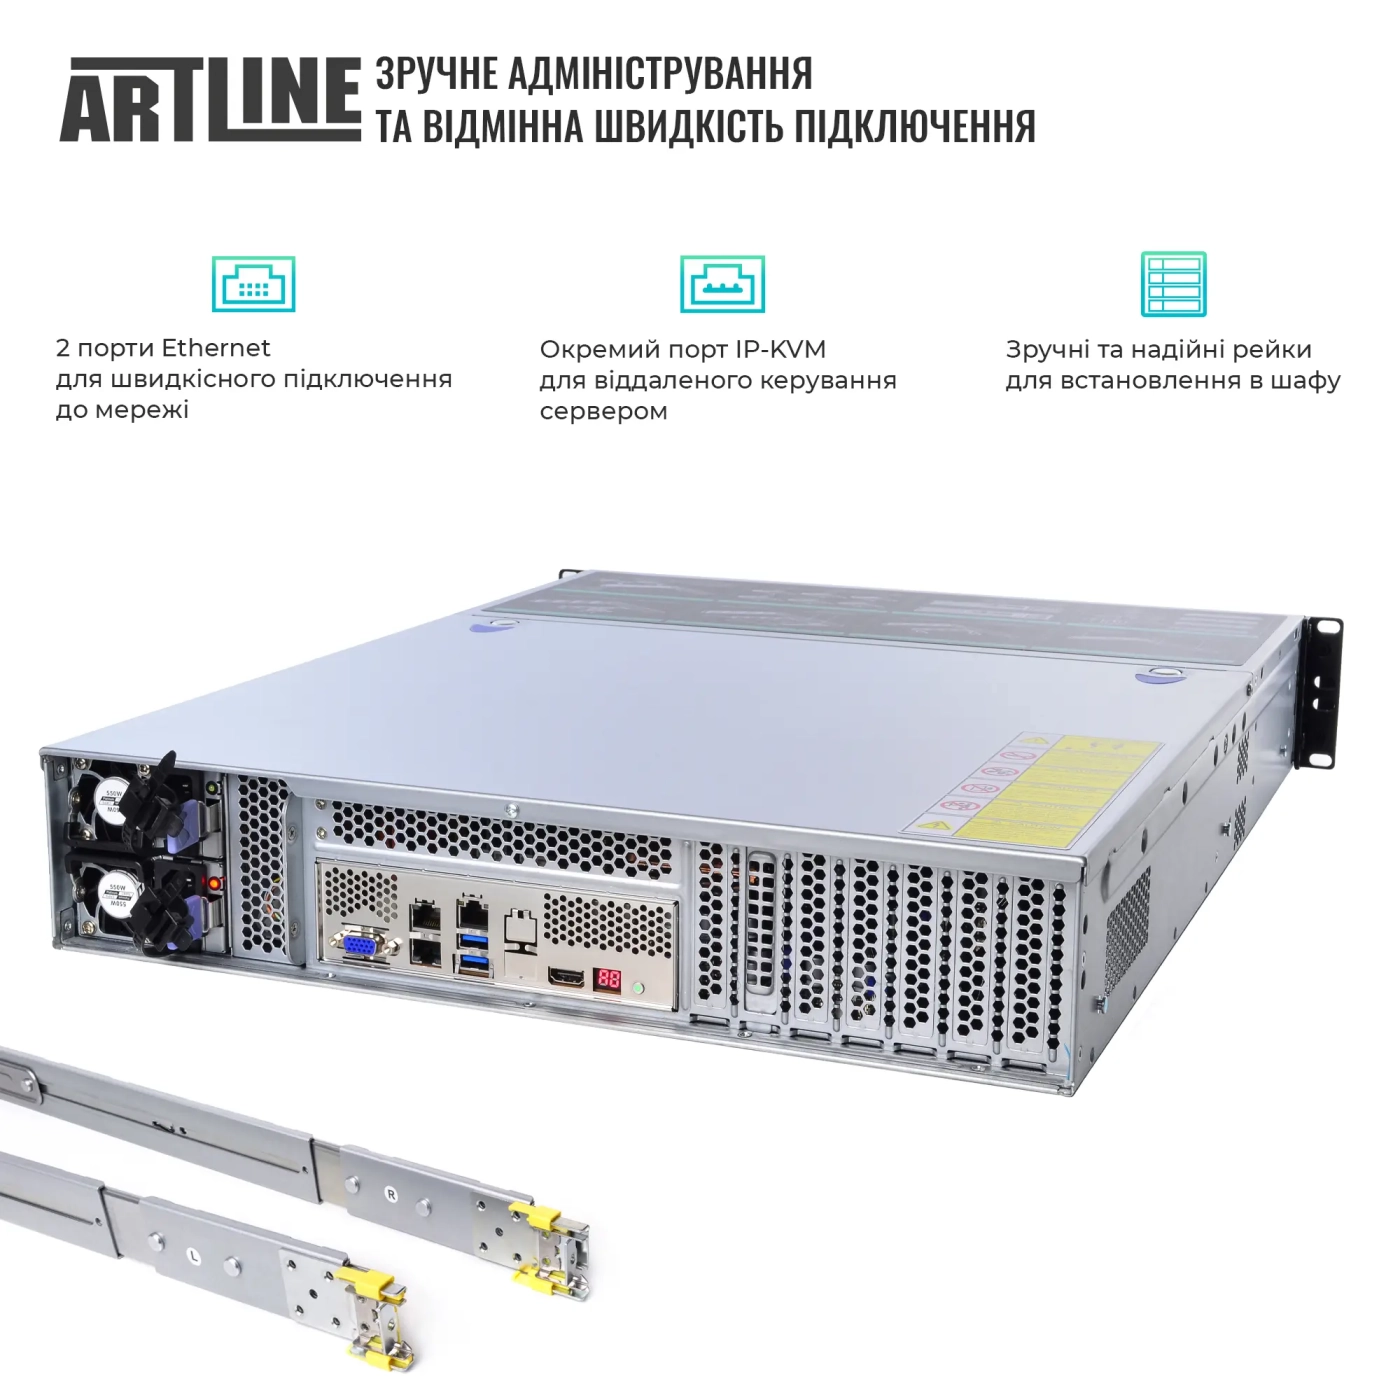 Купить Сервер ARTLINE Business R81 (R81v18) - фото 2